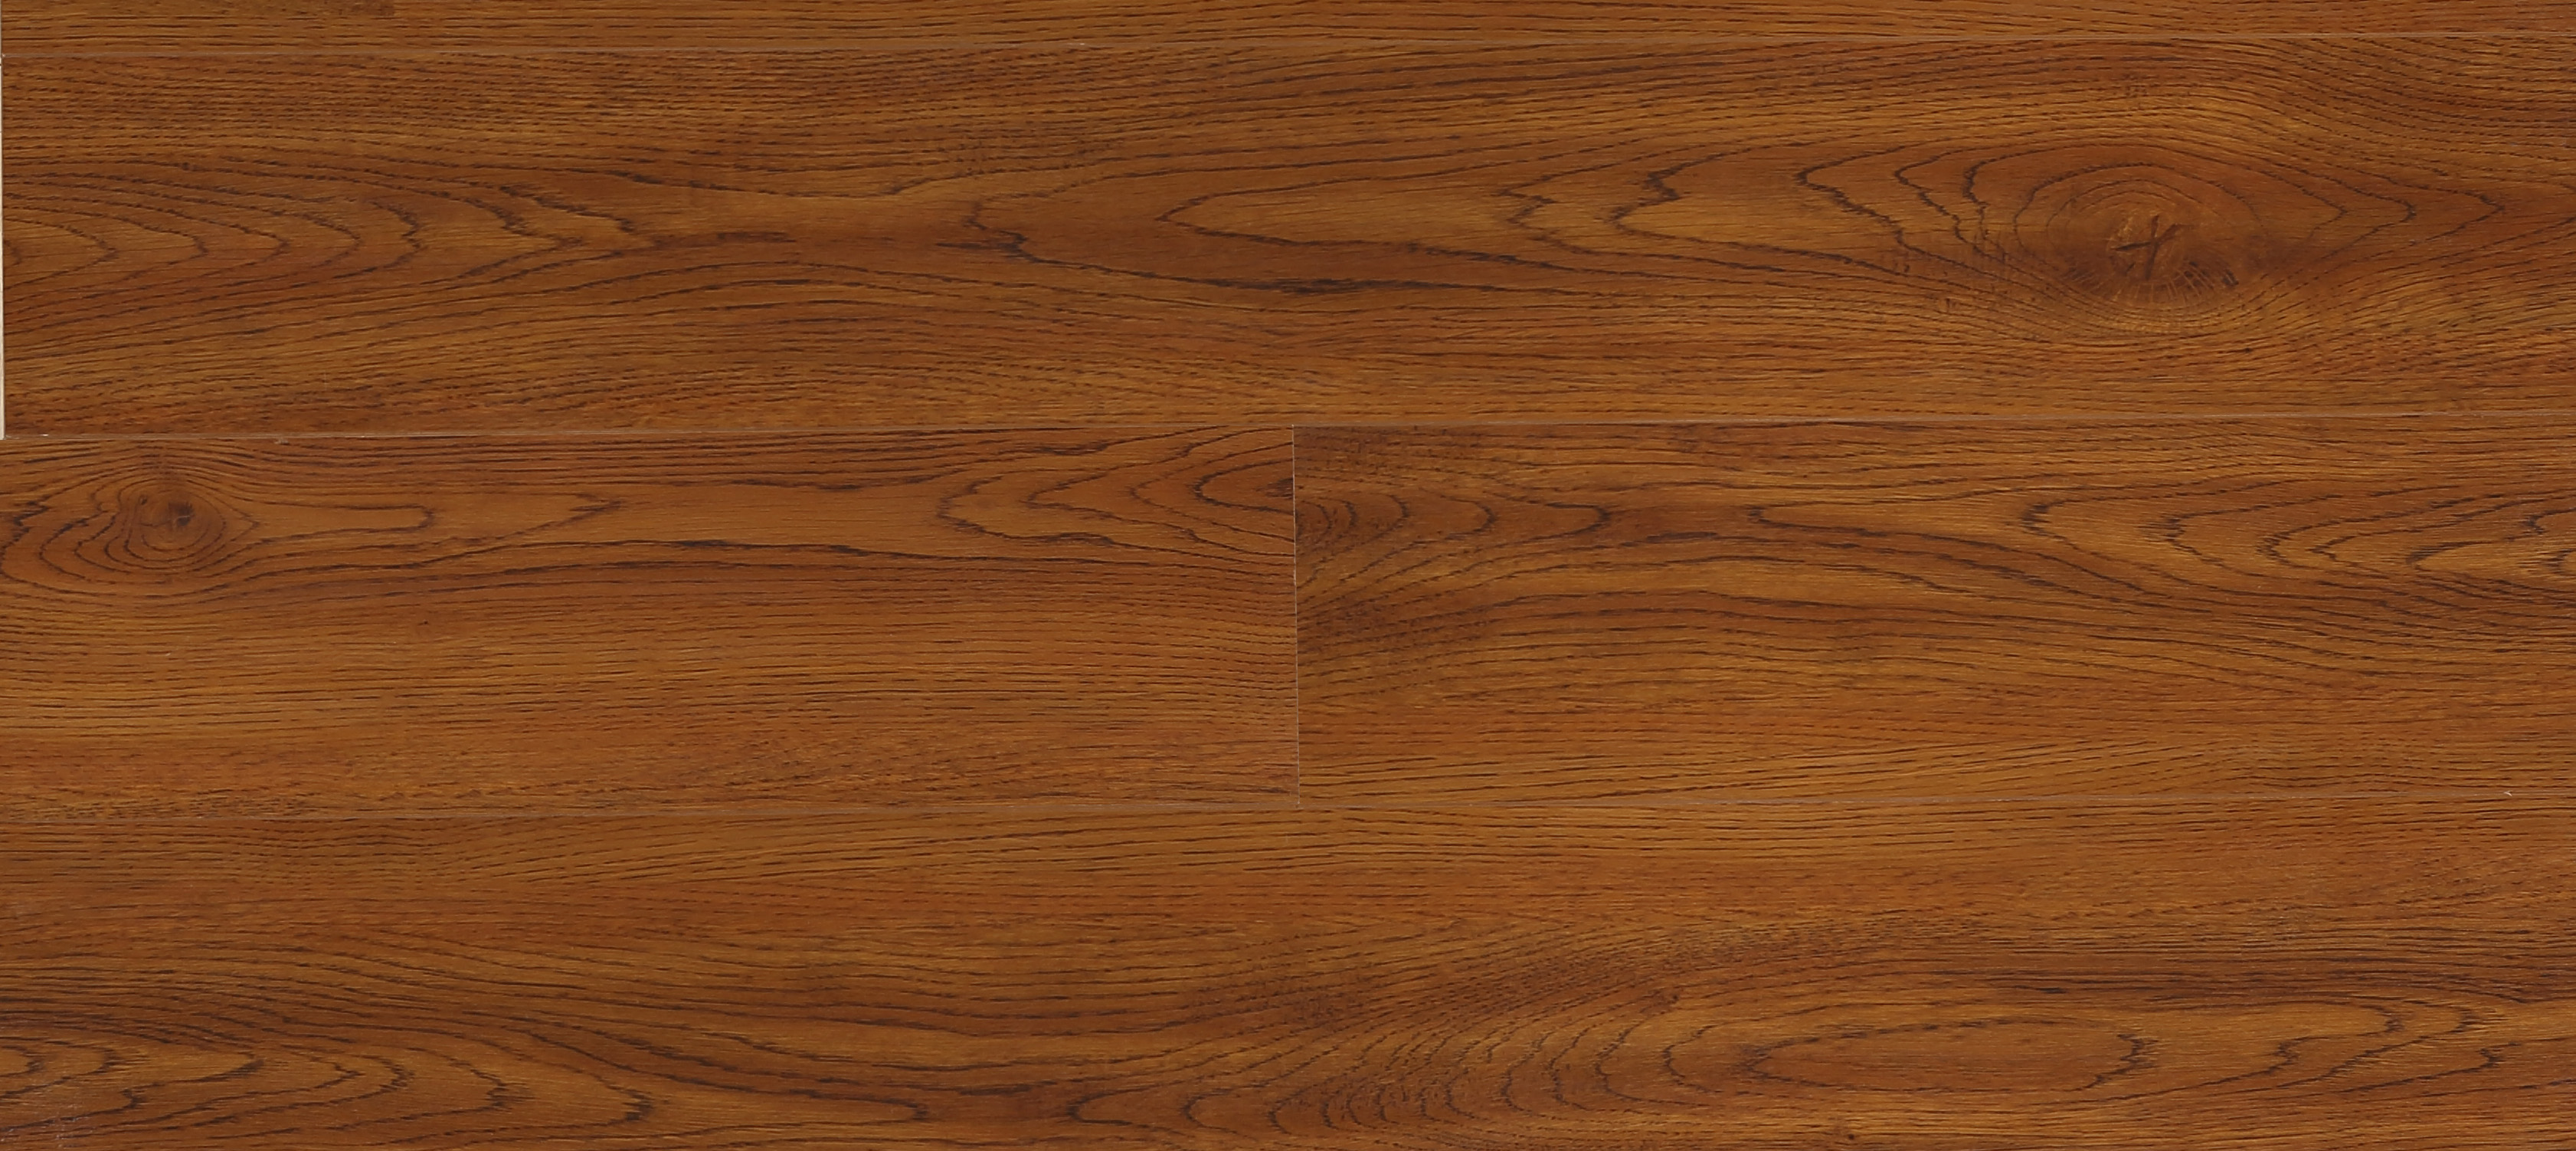 家装客厅多层实木复合地板图片_土巴兔装修效果图